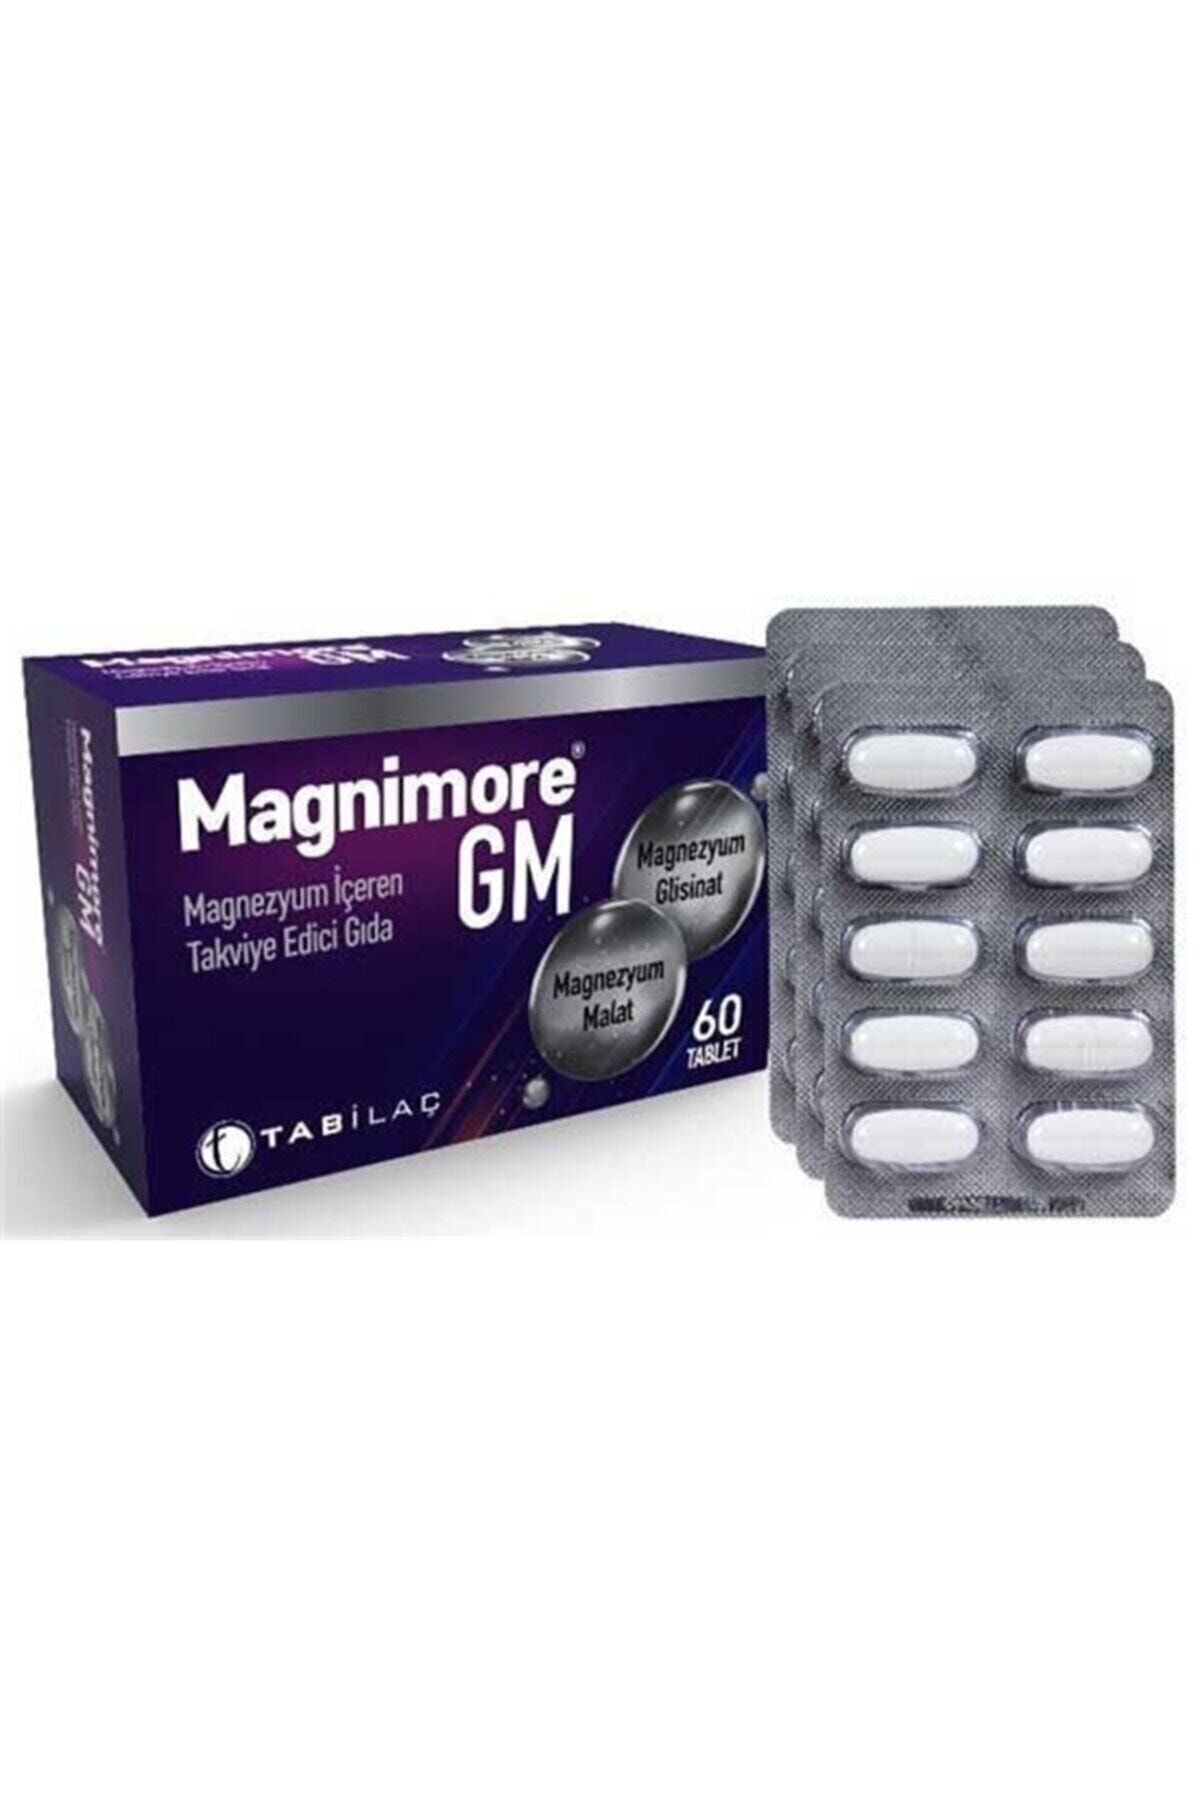 Magnimore Gm 60 Tablet